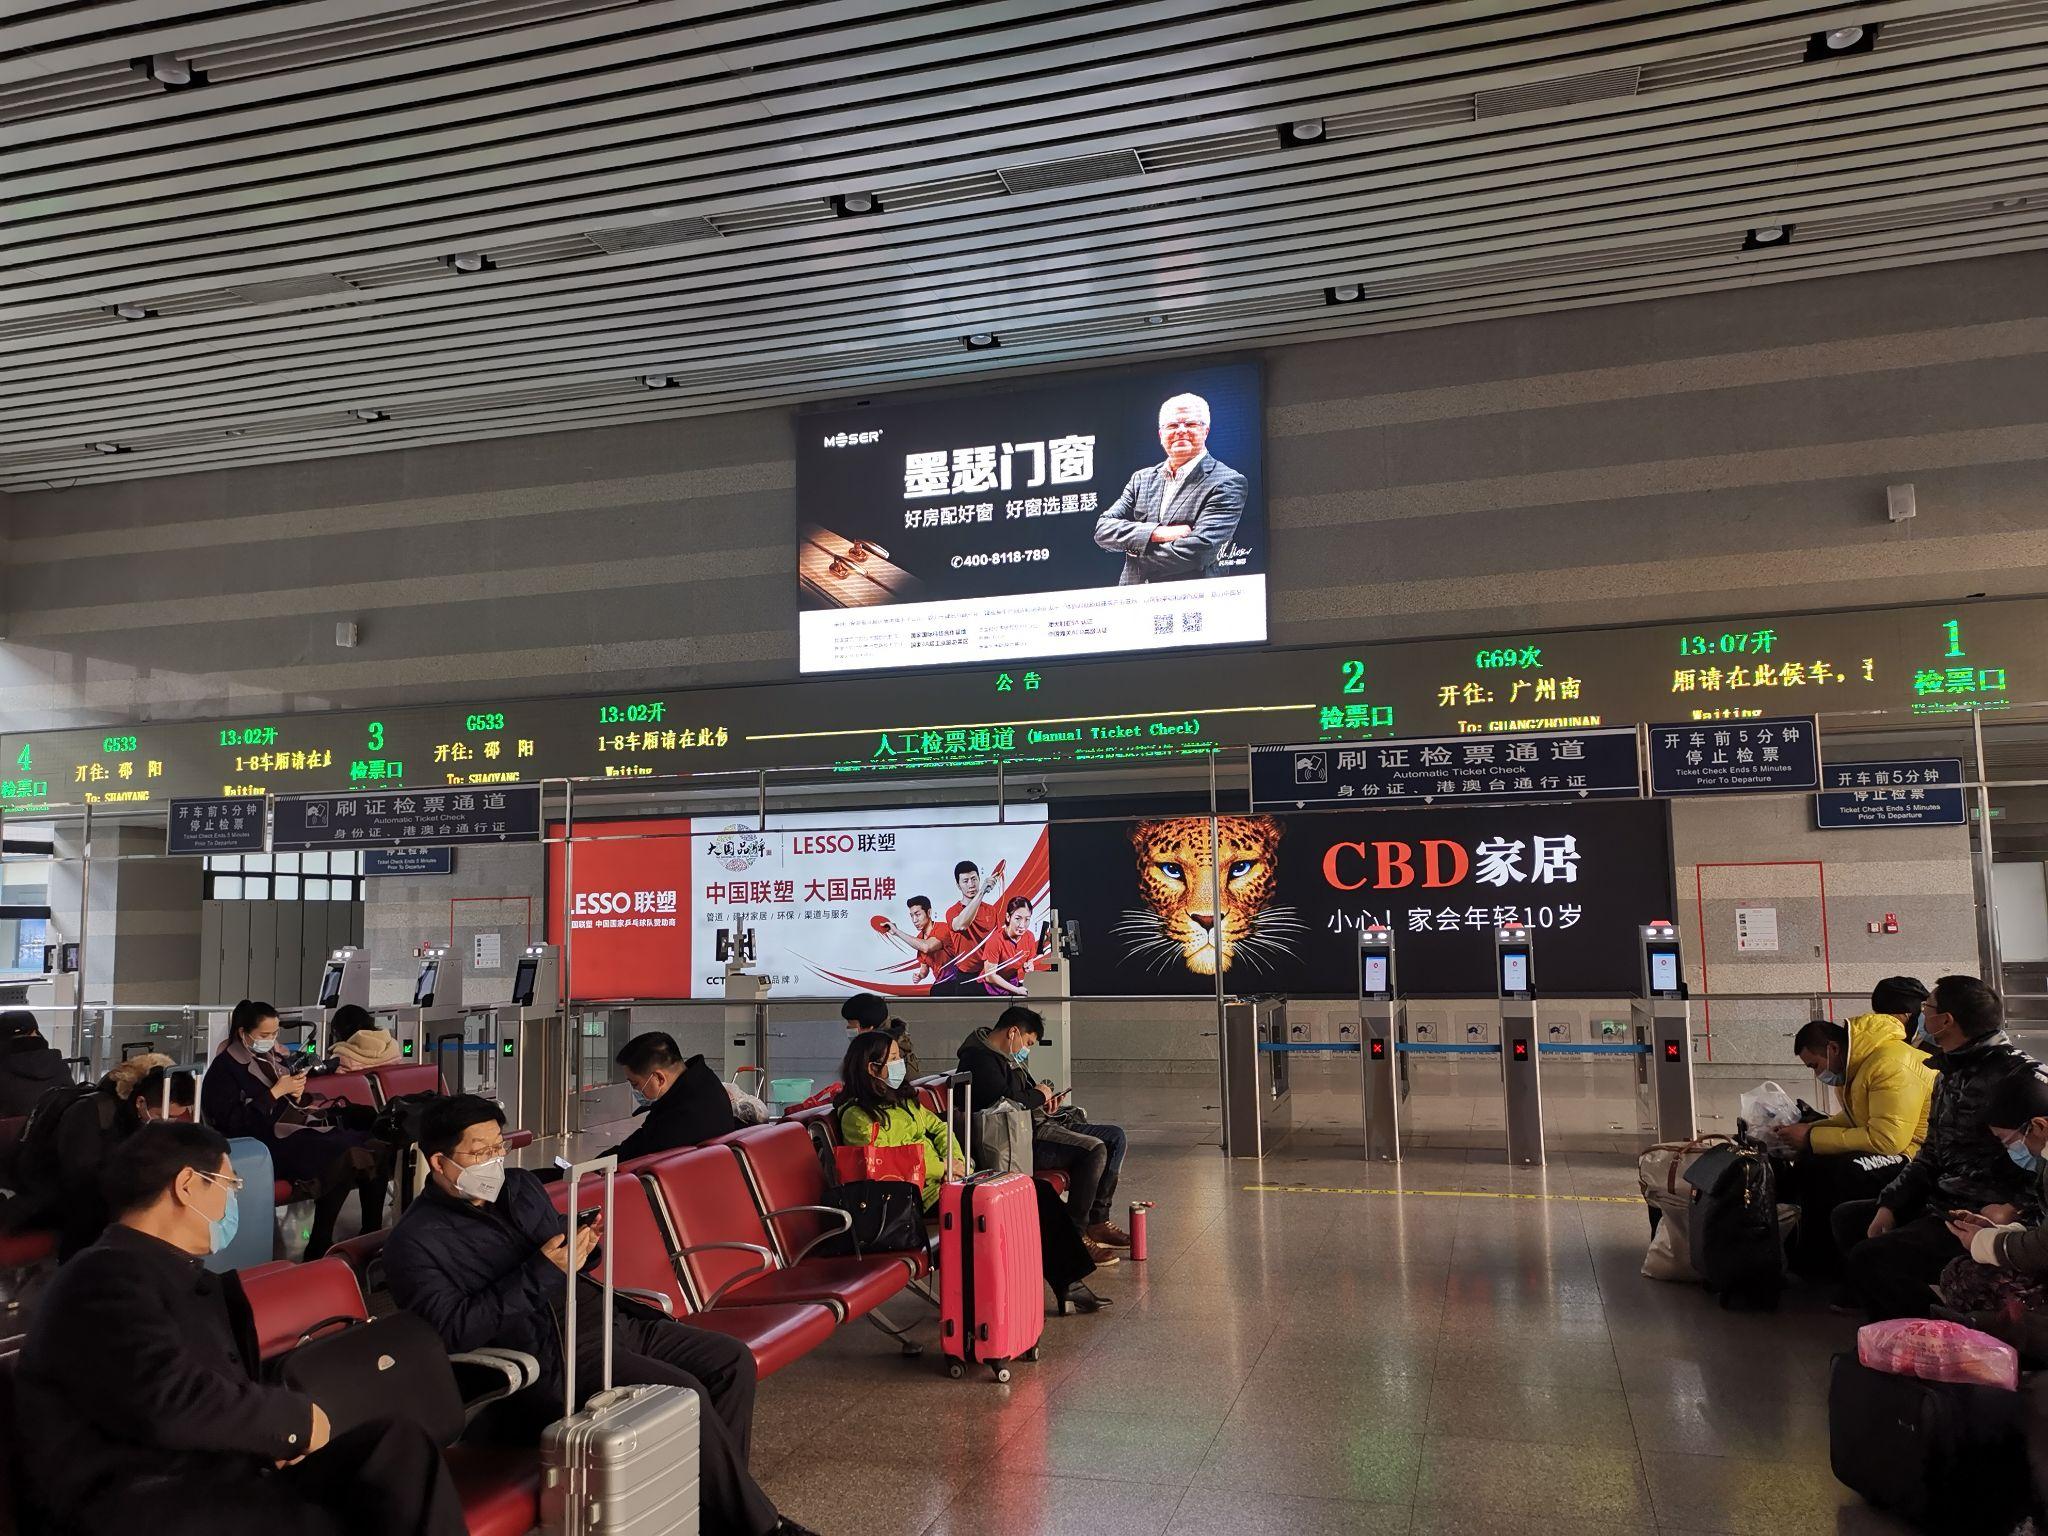 北京西站候车厅示意图图片